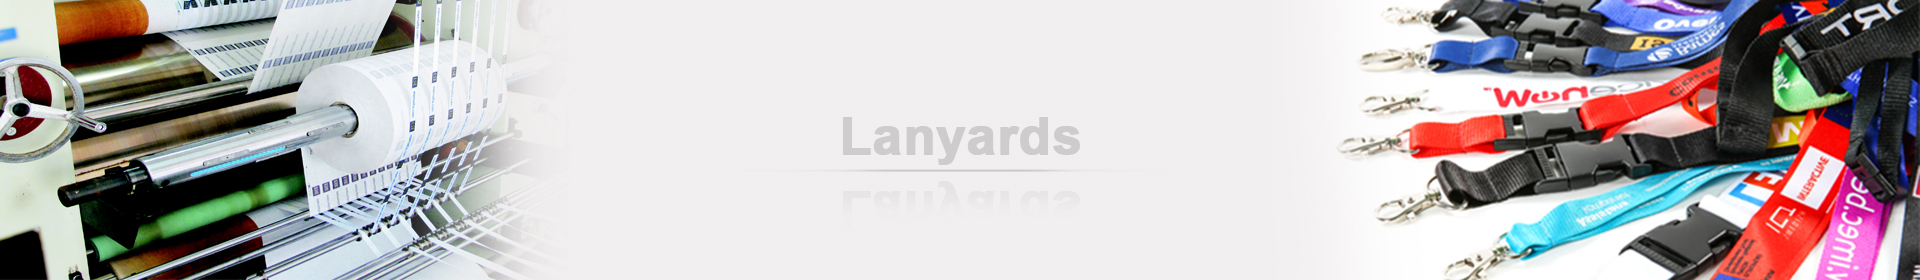 China Stylish Lanyard Supplier Jian provides variety choice of lanyards